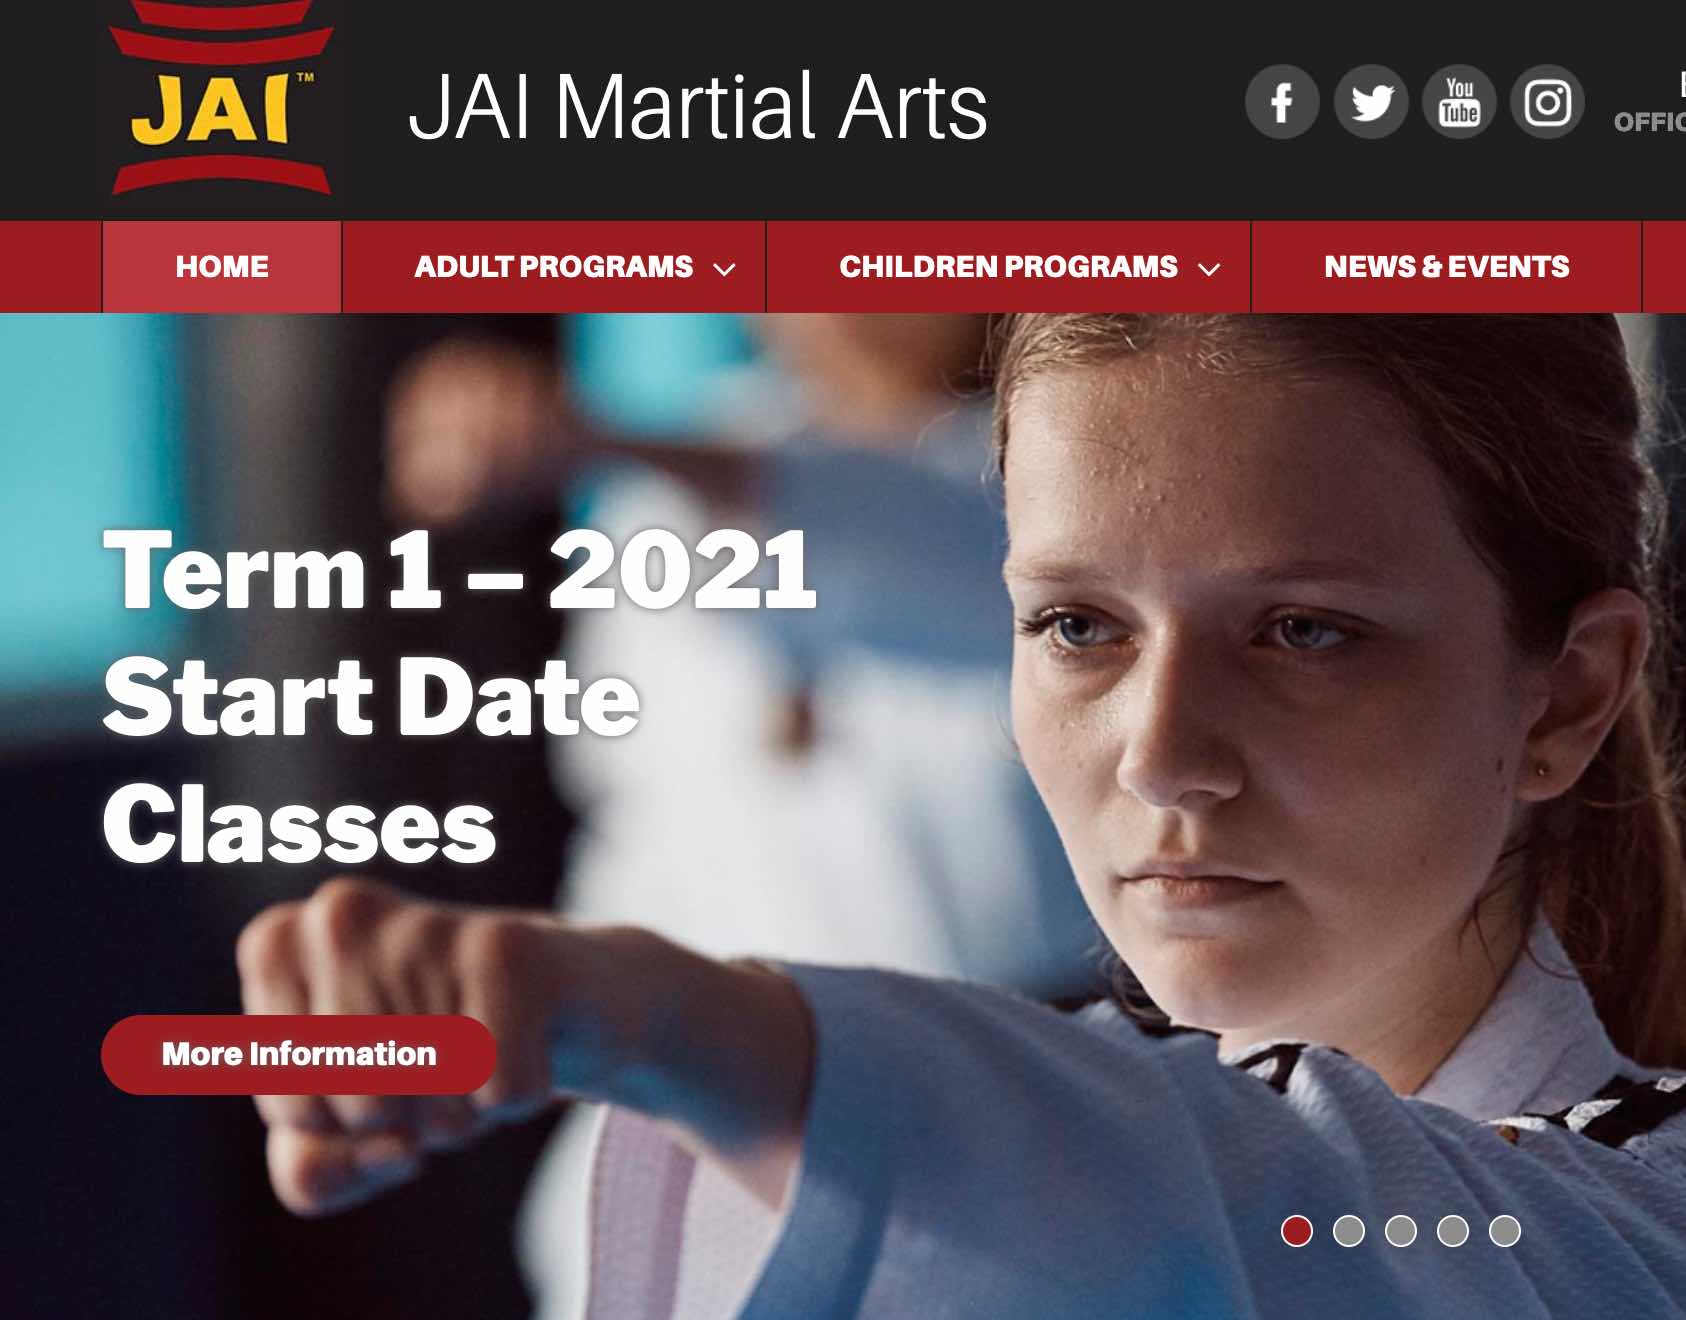 jai martial arts case study - seo sydney experts